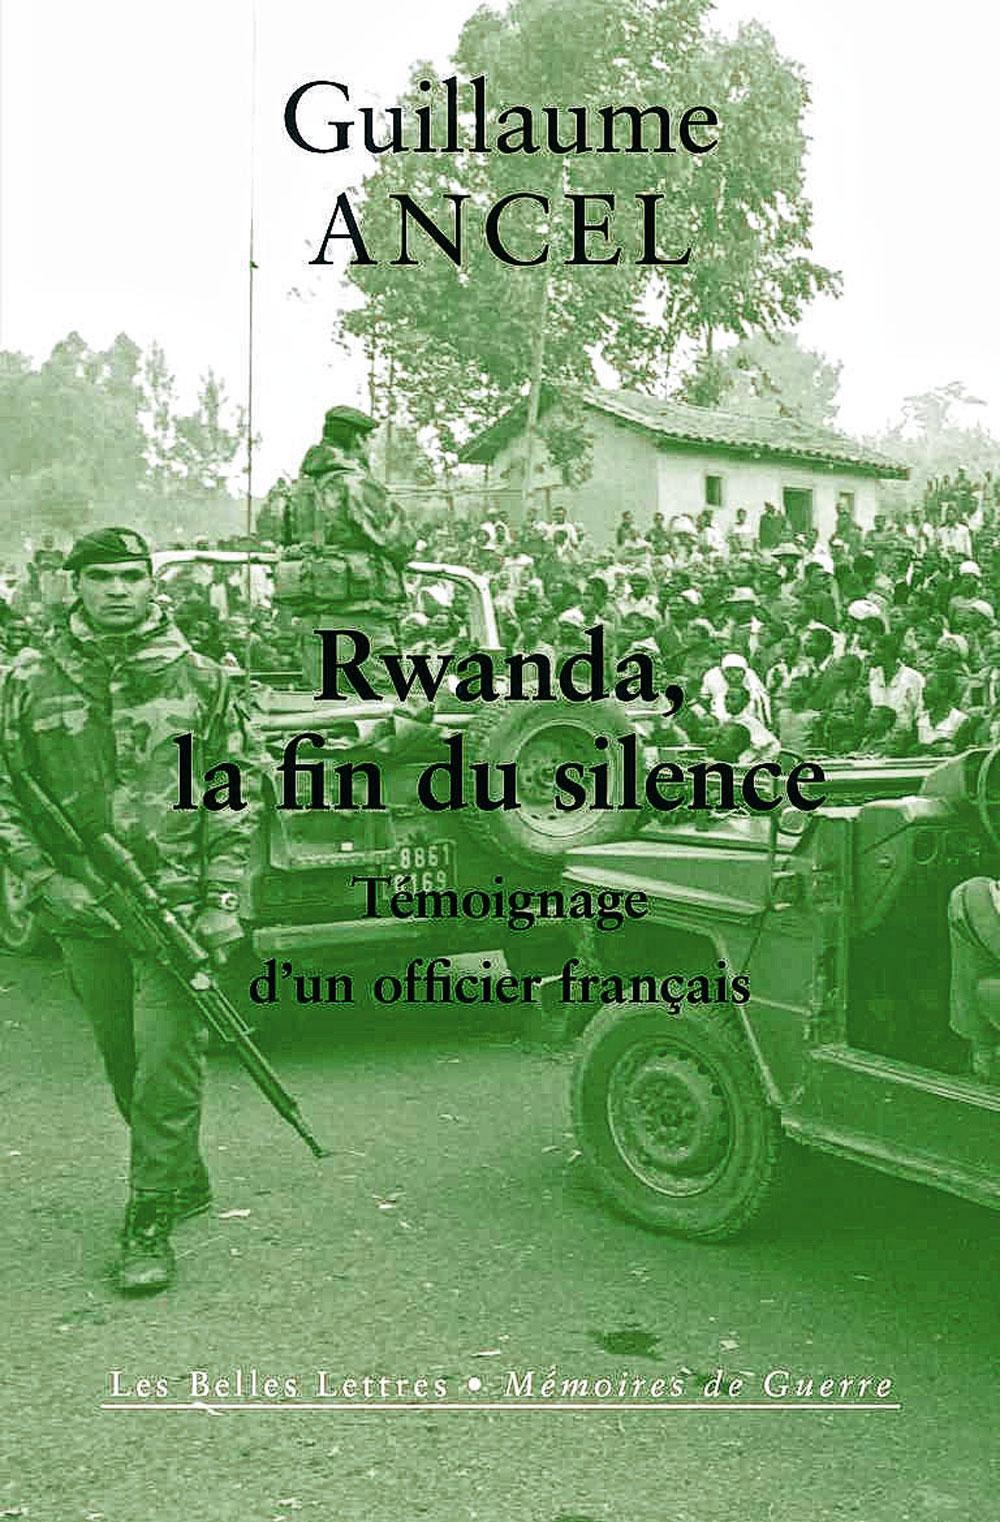 L'opération des soldats français au Rwanda en 1994 visait aussi le soutien au gouvernement génocidaire